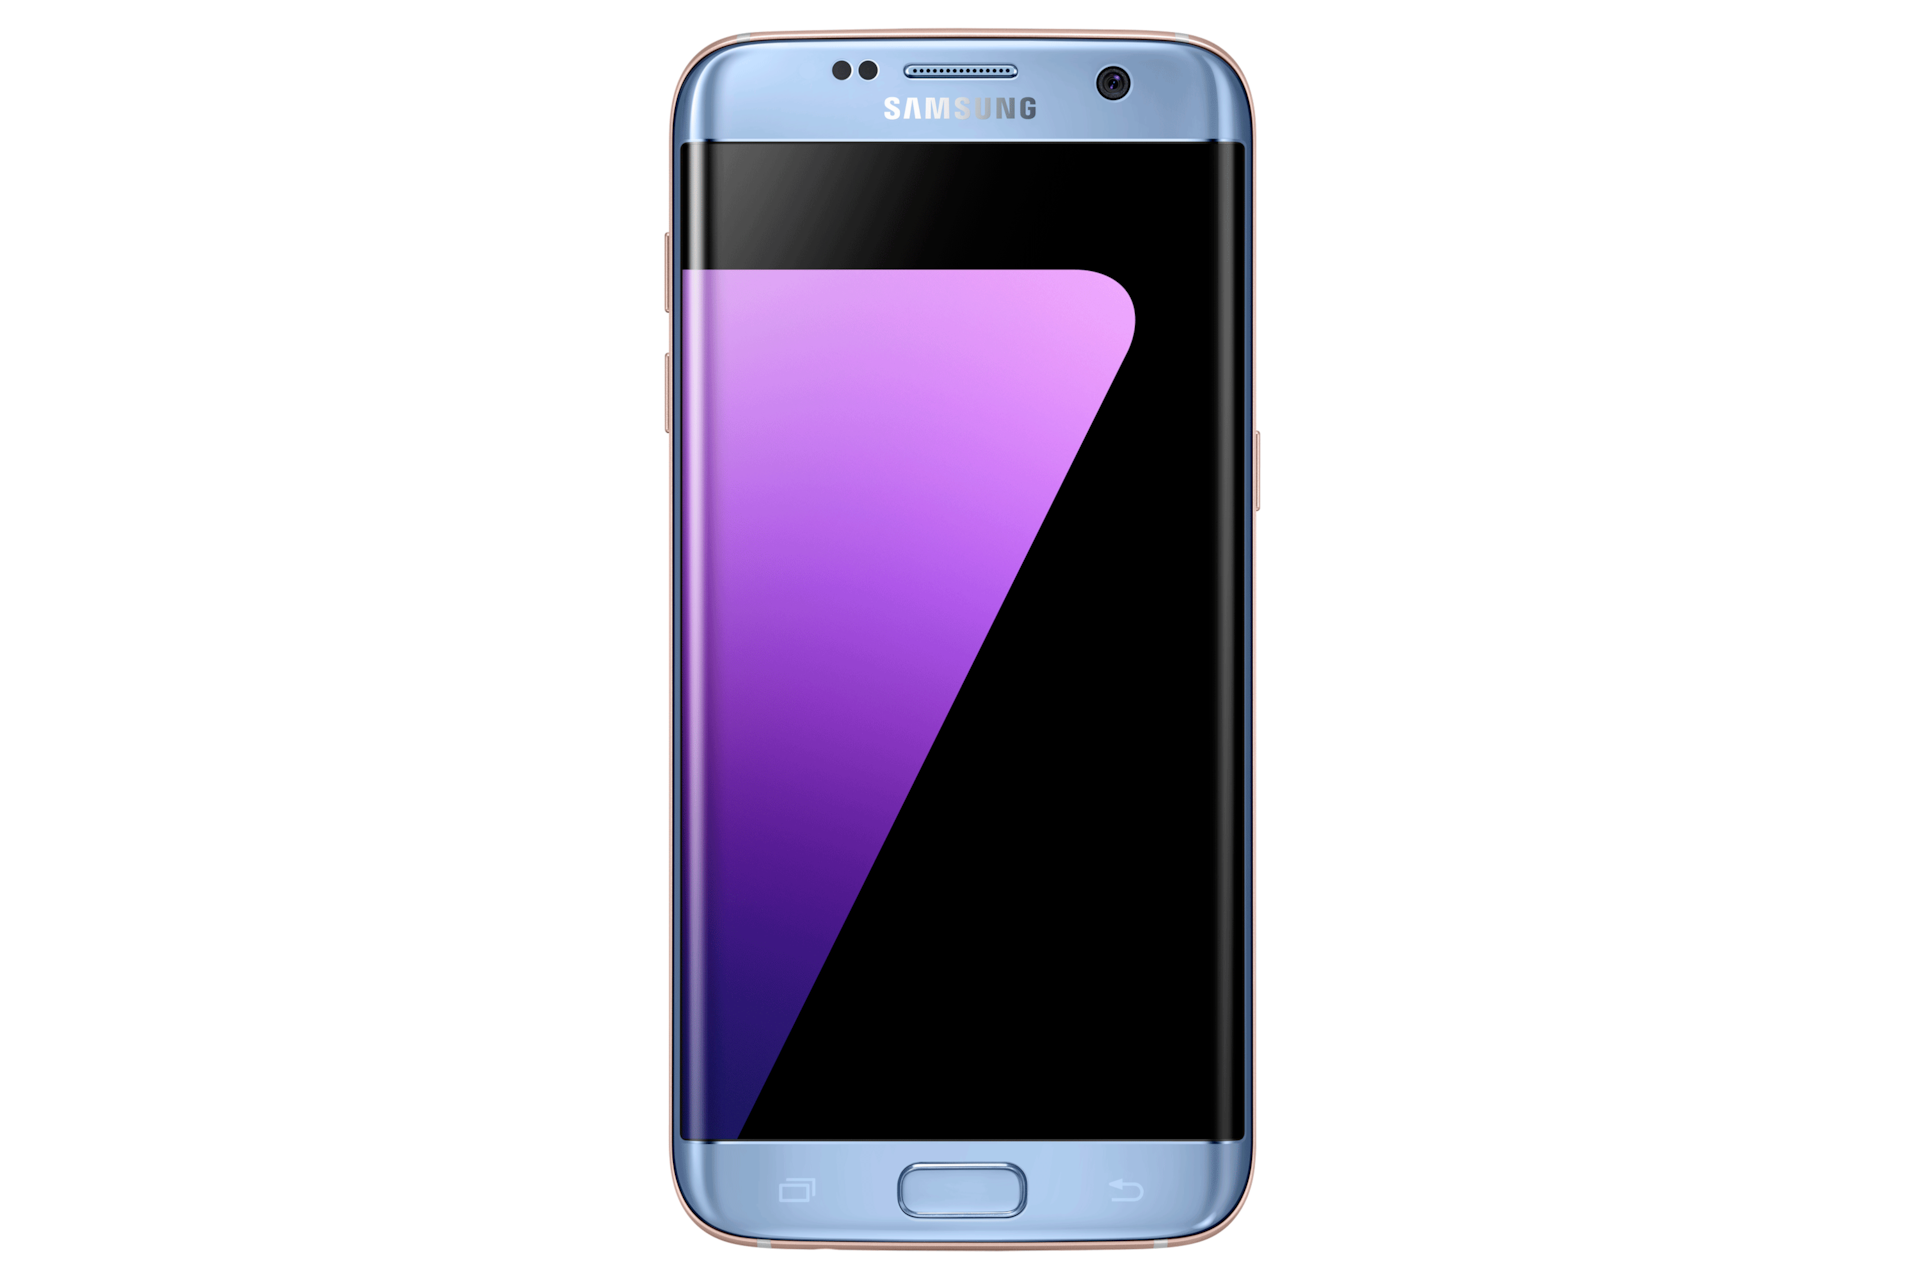 Touhou Charlotte Bronte Ervaren persoon Galaxy S7 edge | SM-G935FZDLTPA | Samsung Caribbean